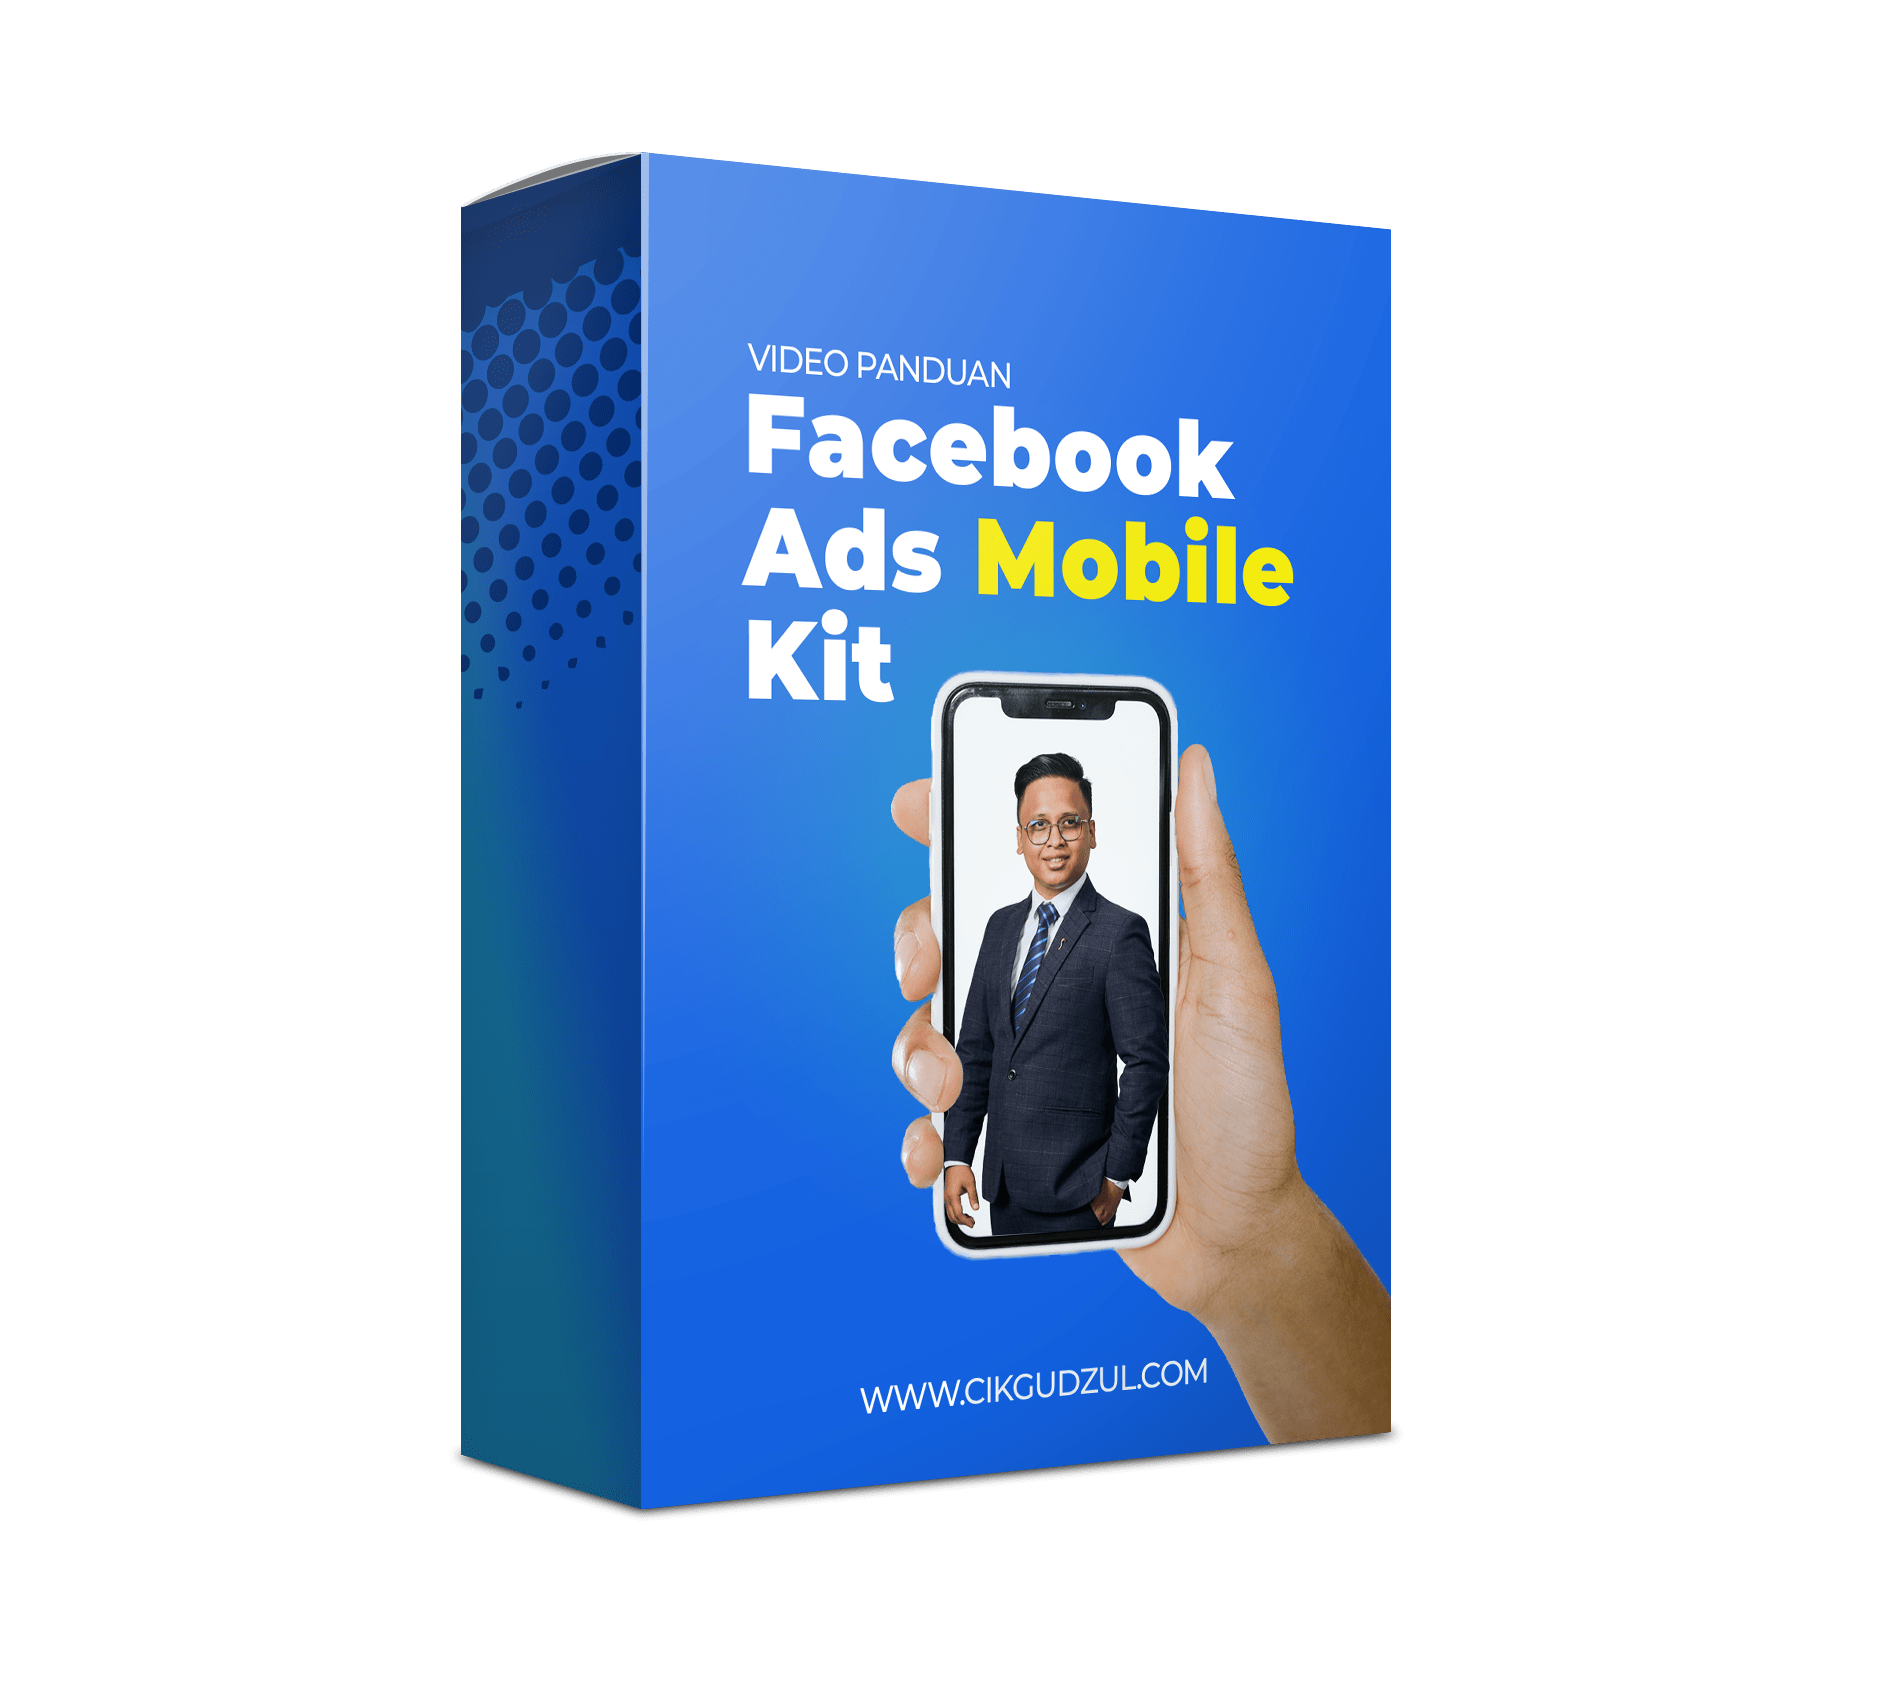 Panduan Video Facebook Ads Mobile Kit